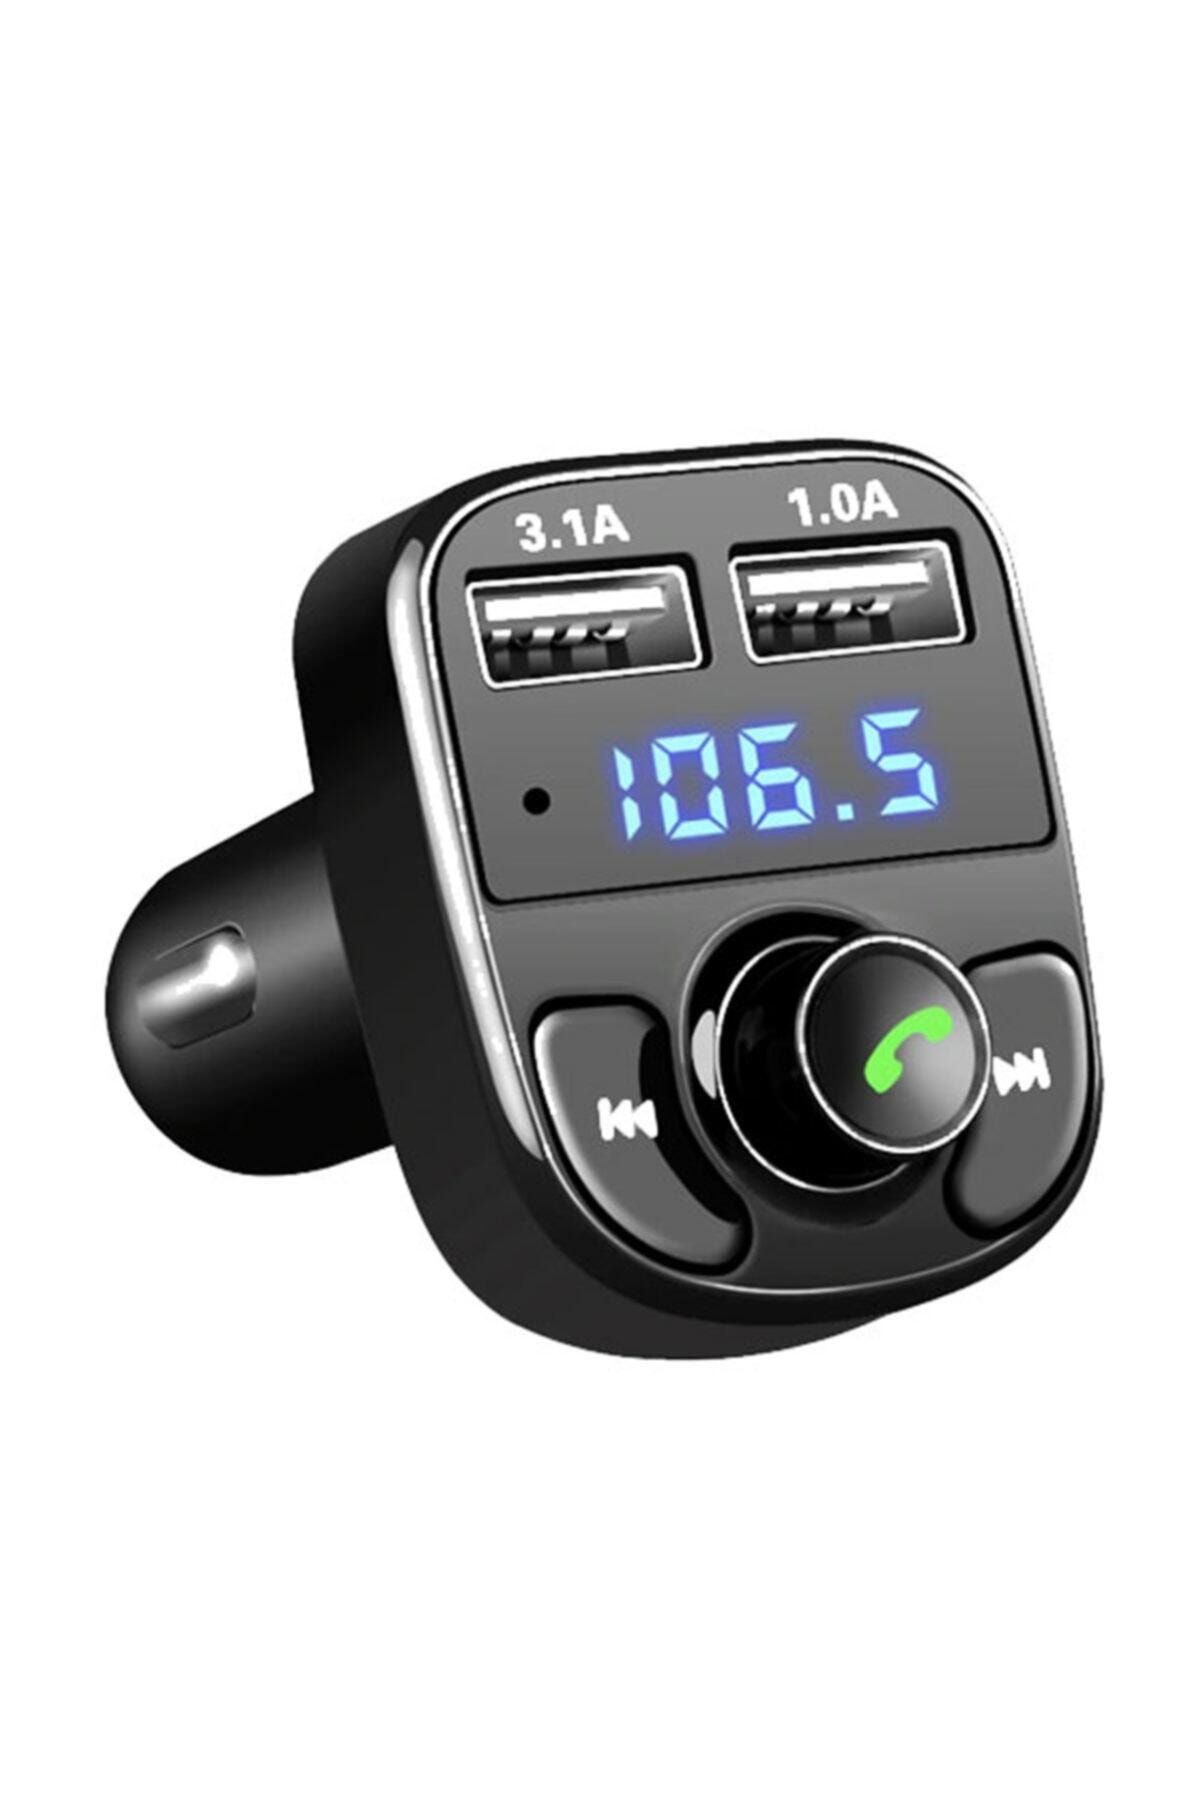 zabata Carx8 Fm Transmitter Bluetooth 4.0 Araç Kiti Usb Şarj